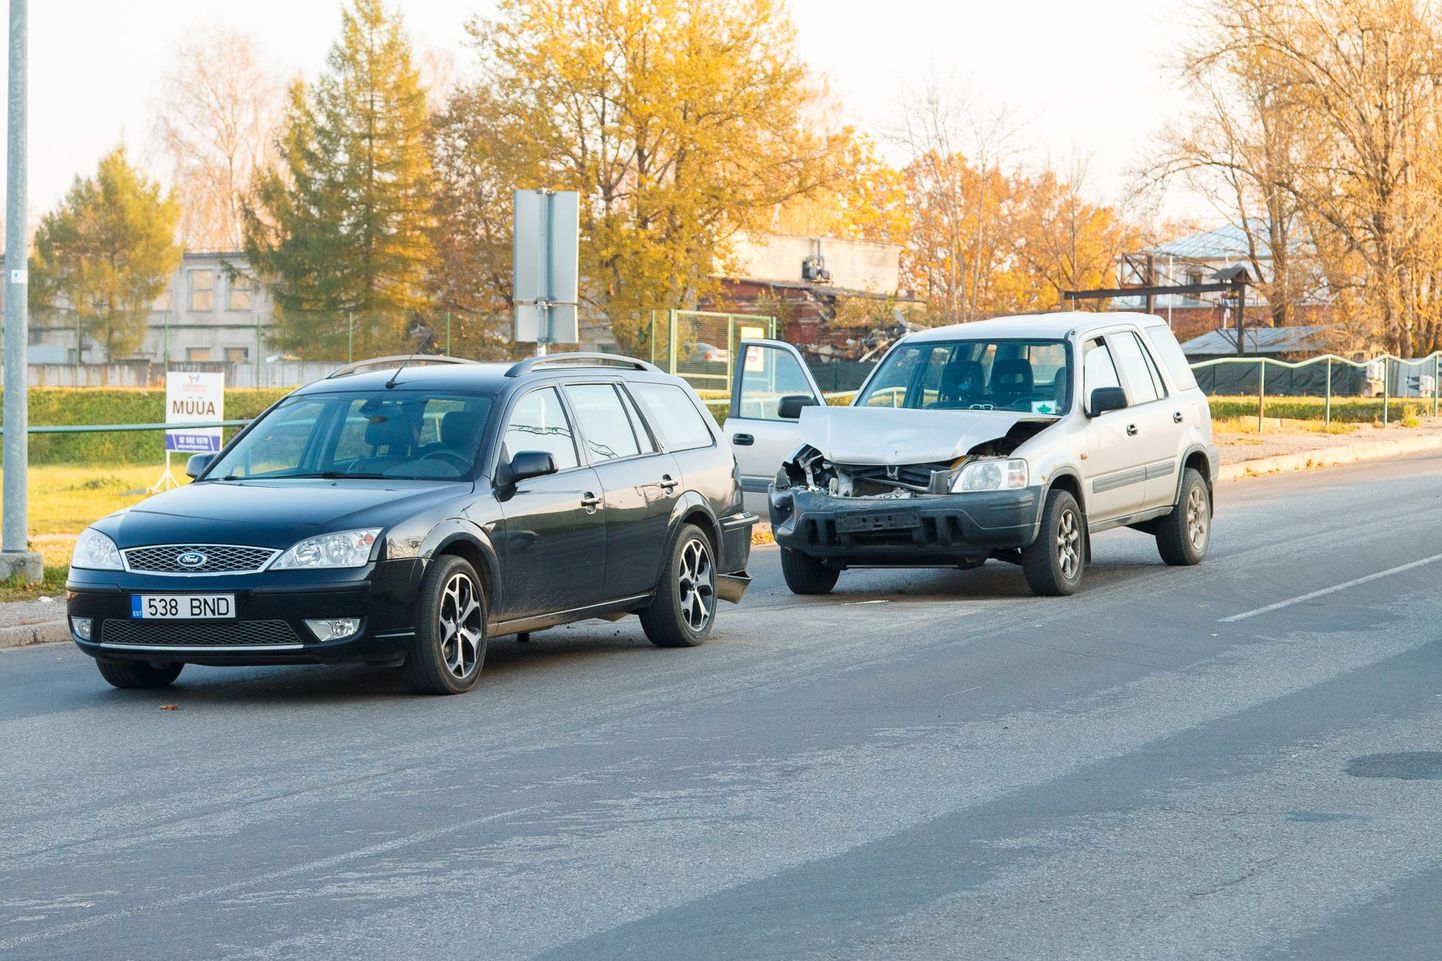 Liiklusõnnetus Valgas Võru tänaval 20. oktoobril